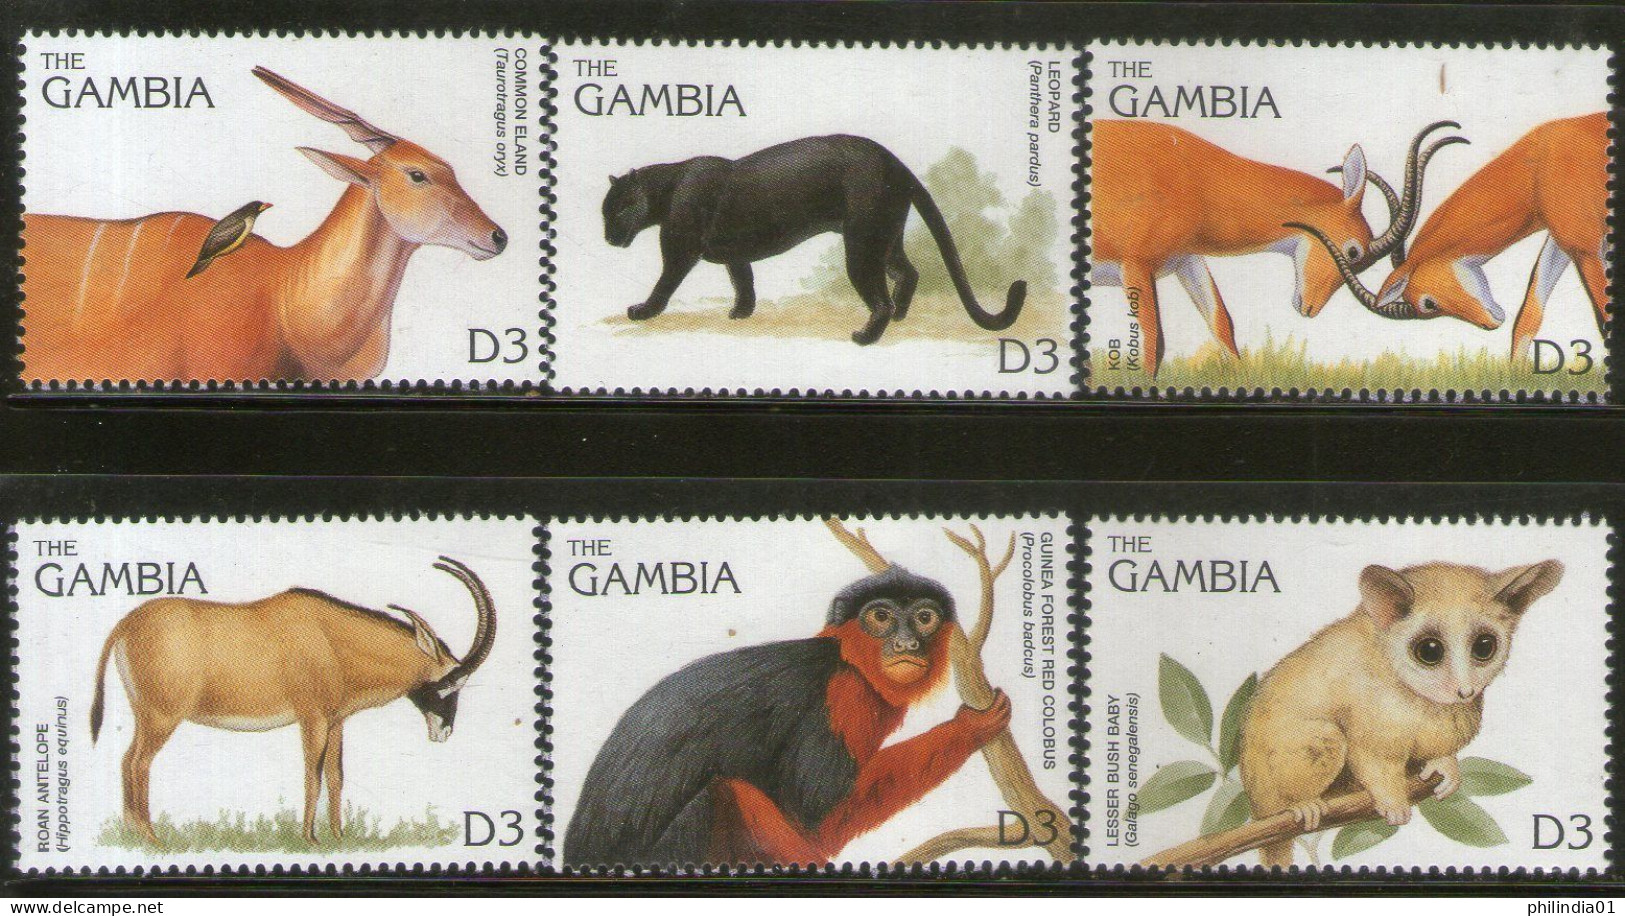 Gambia 1996 Monkey Mammals Wildlife Animals Sc 1740 6v MNH # 807 - Affen